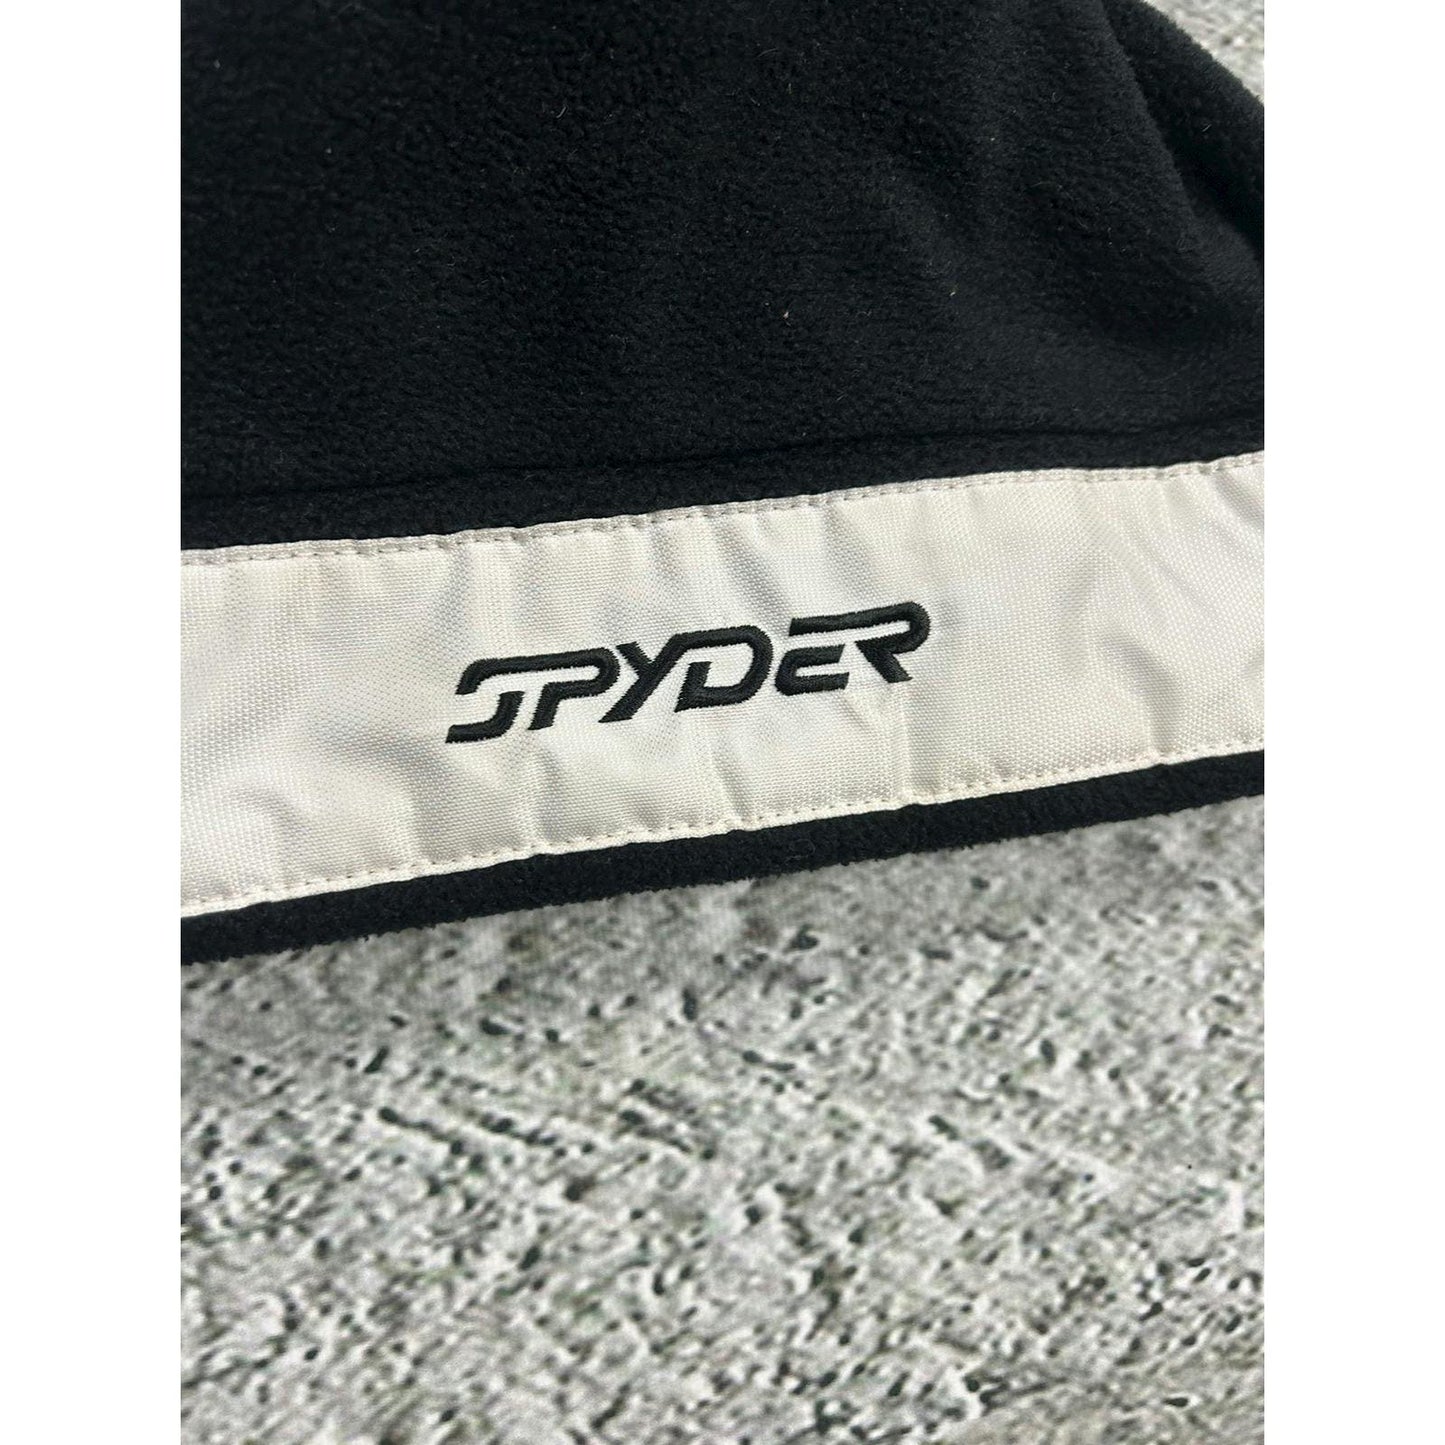 Spyder beanie vintage big logo black white Y2K